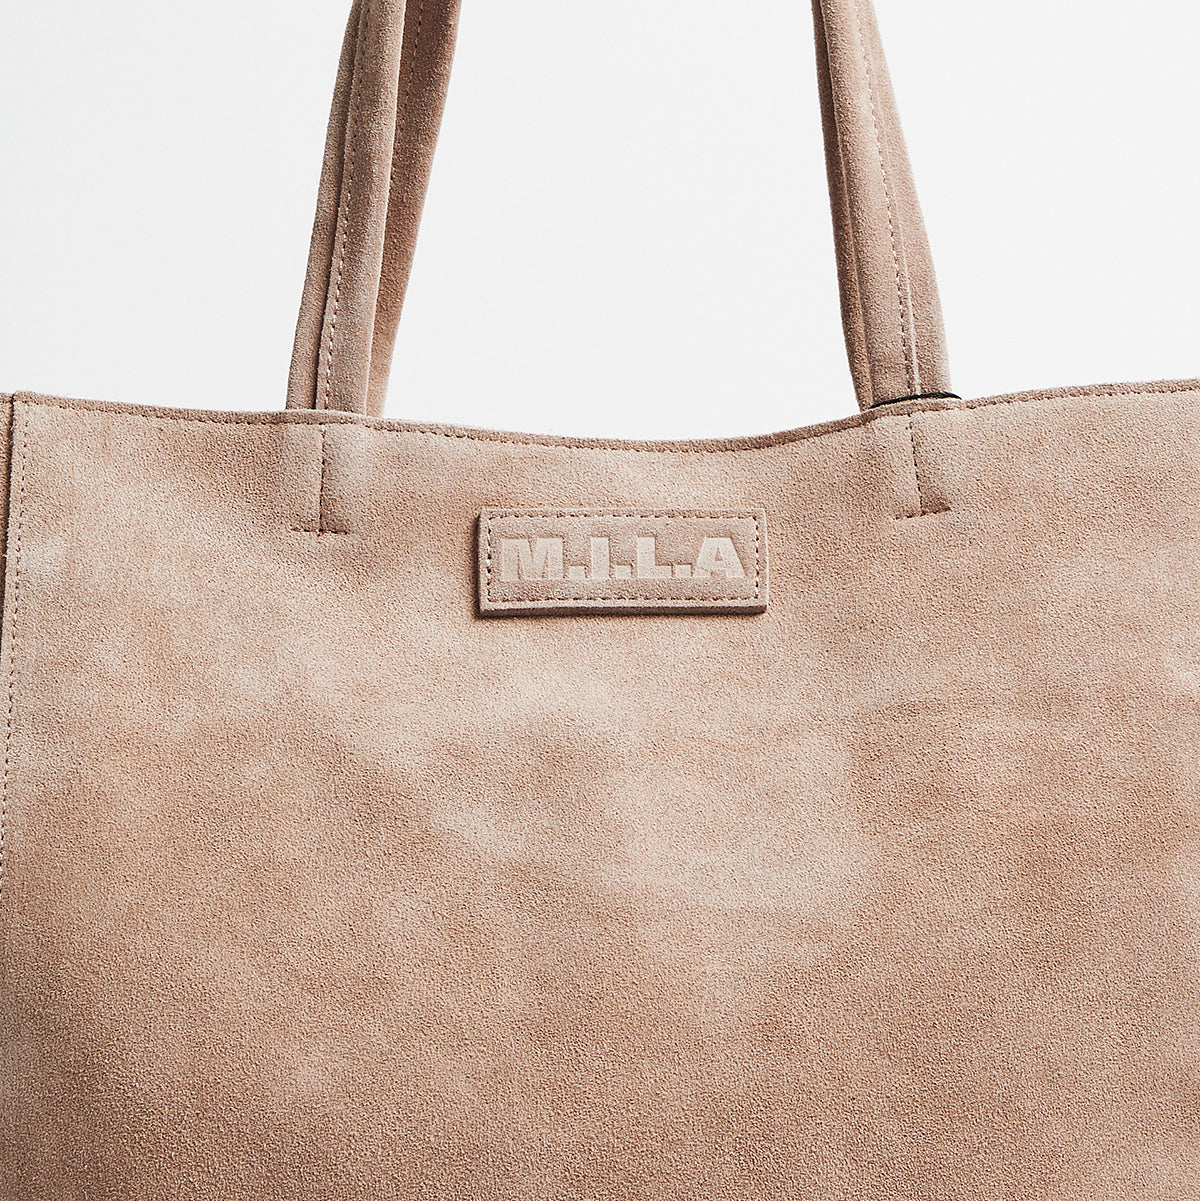 Luxury Tote Bag | Suede | Toffee